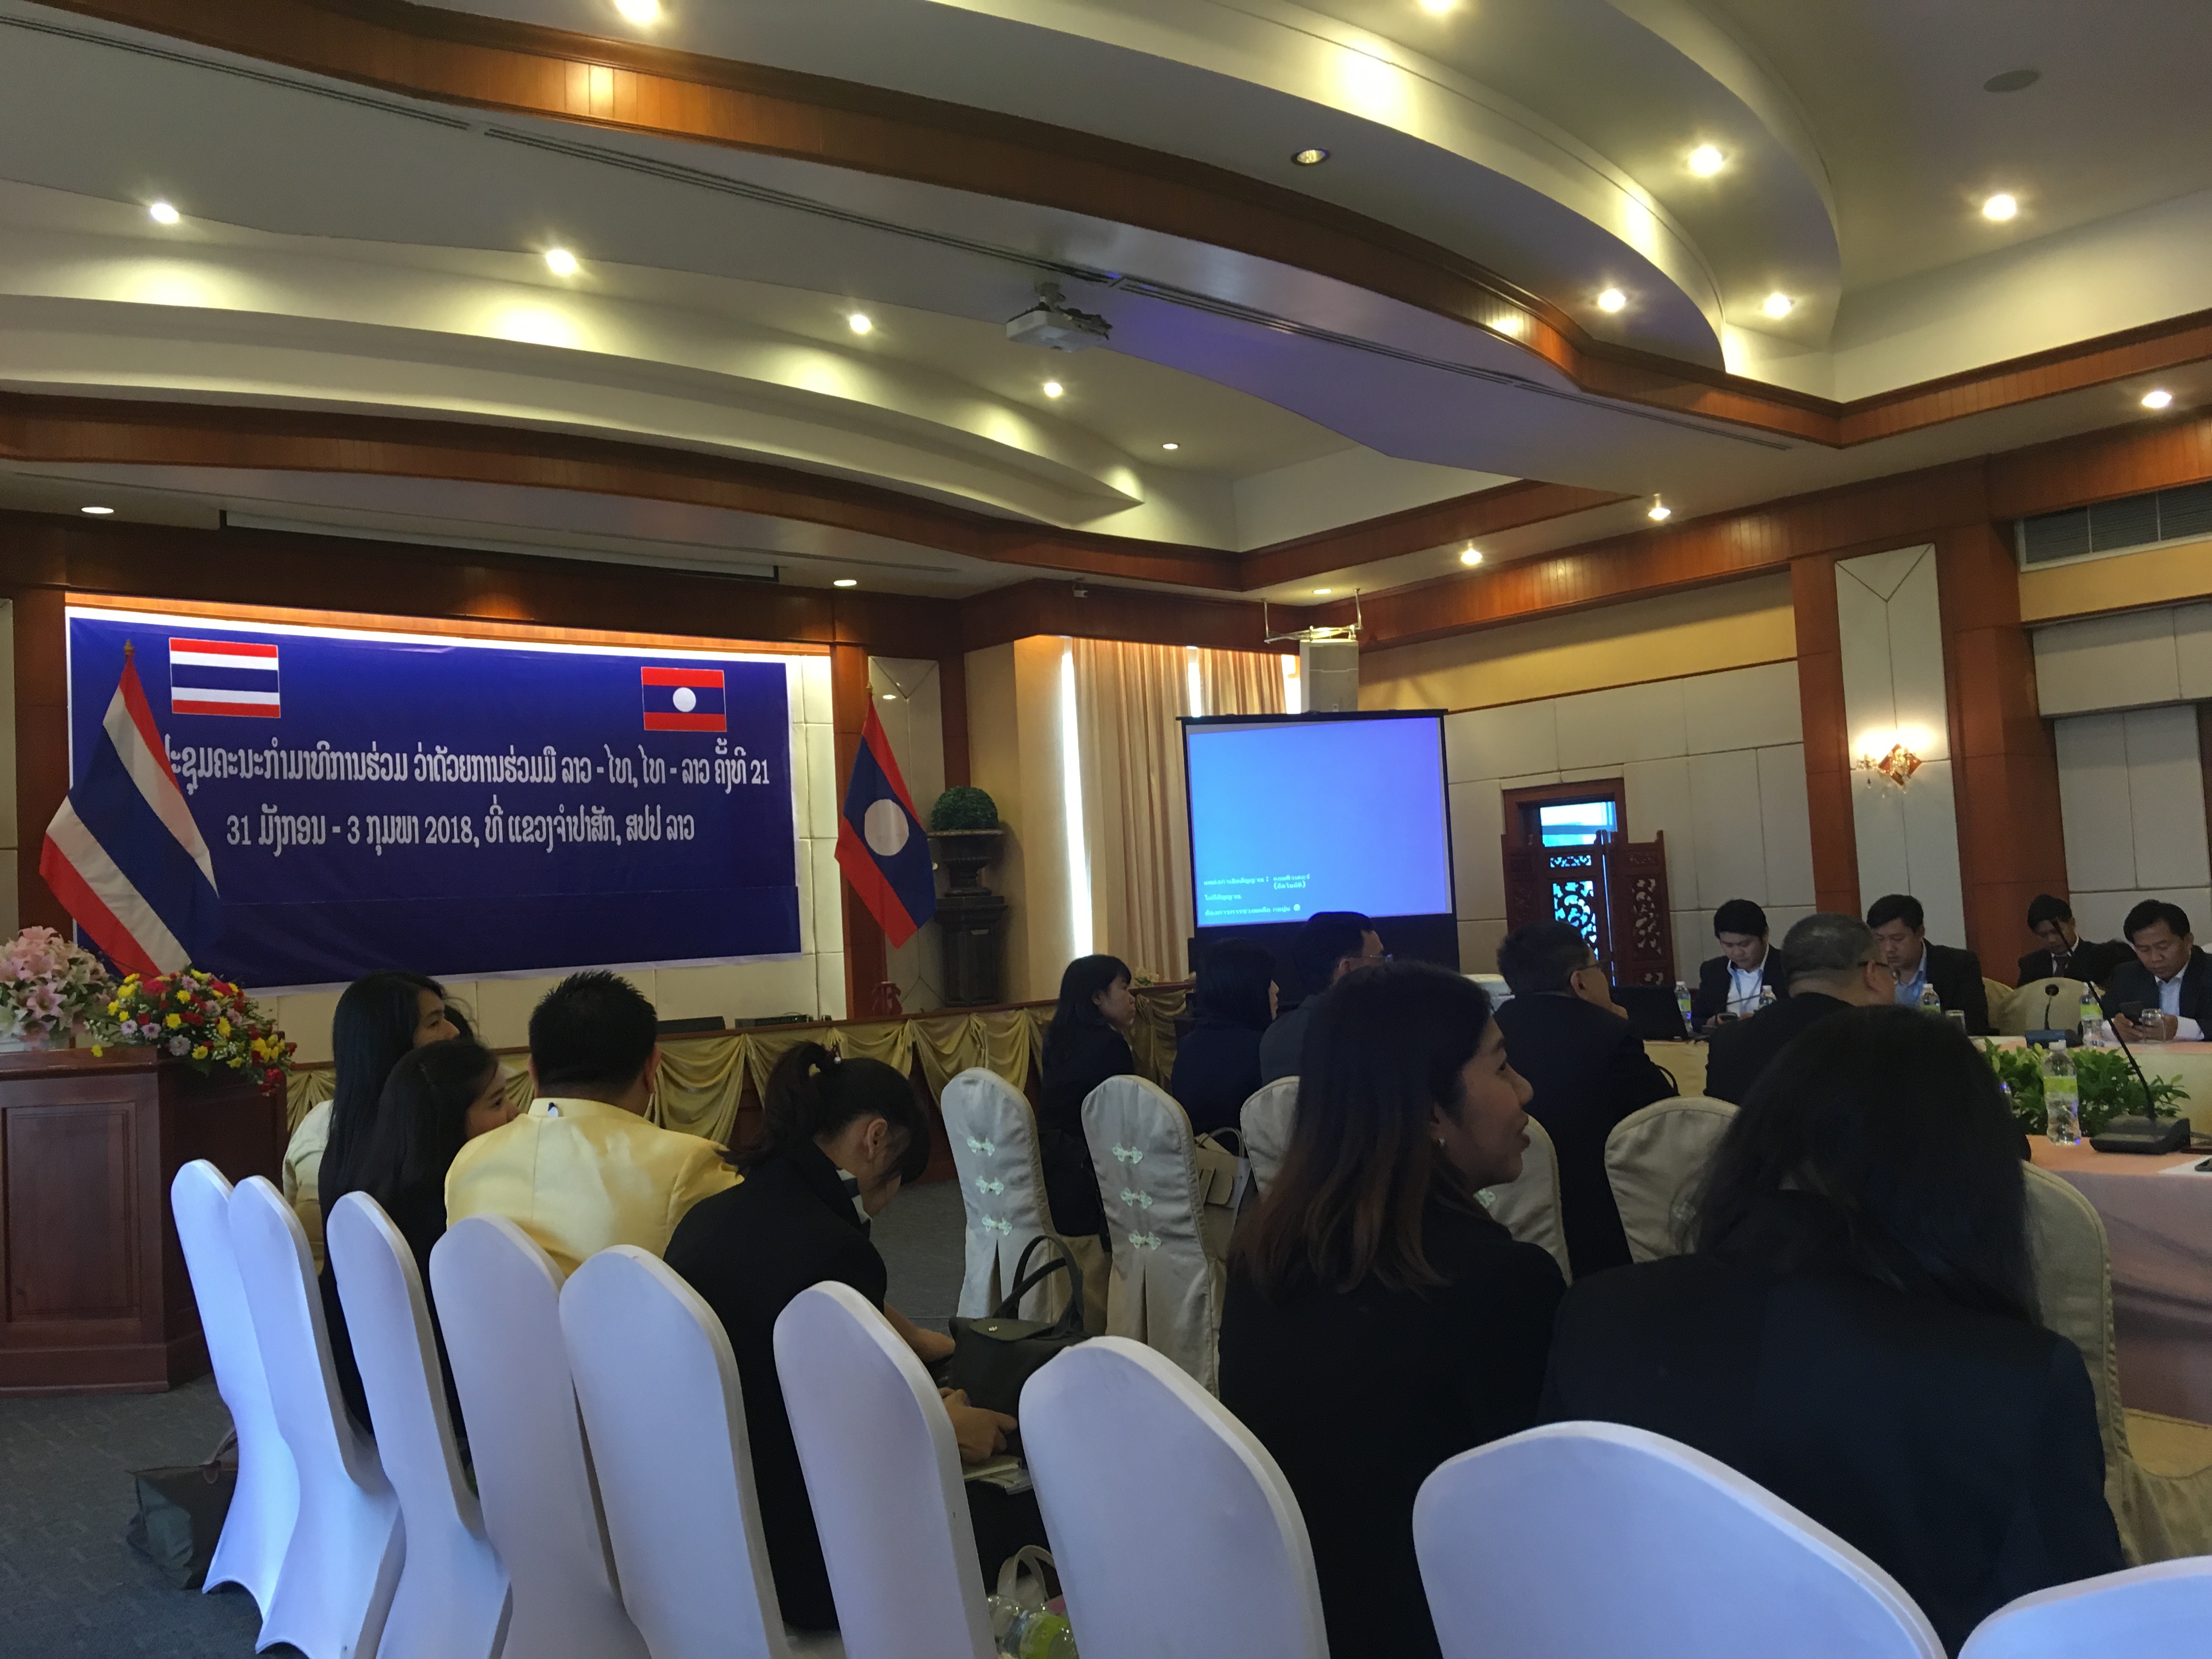 รายงานการเดินทางไปราชการ ณ สาธารณรัฐประชาธิปไตยประชาชนลาว ระหว่างวันที่ 31 มกราคม – 3 กุมภาพันธ์ 2561 โครงการประชุมคณะกรรมาธิการความร่วมมือไทย – ลาว ครั้งที่ 21